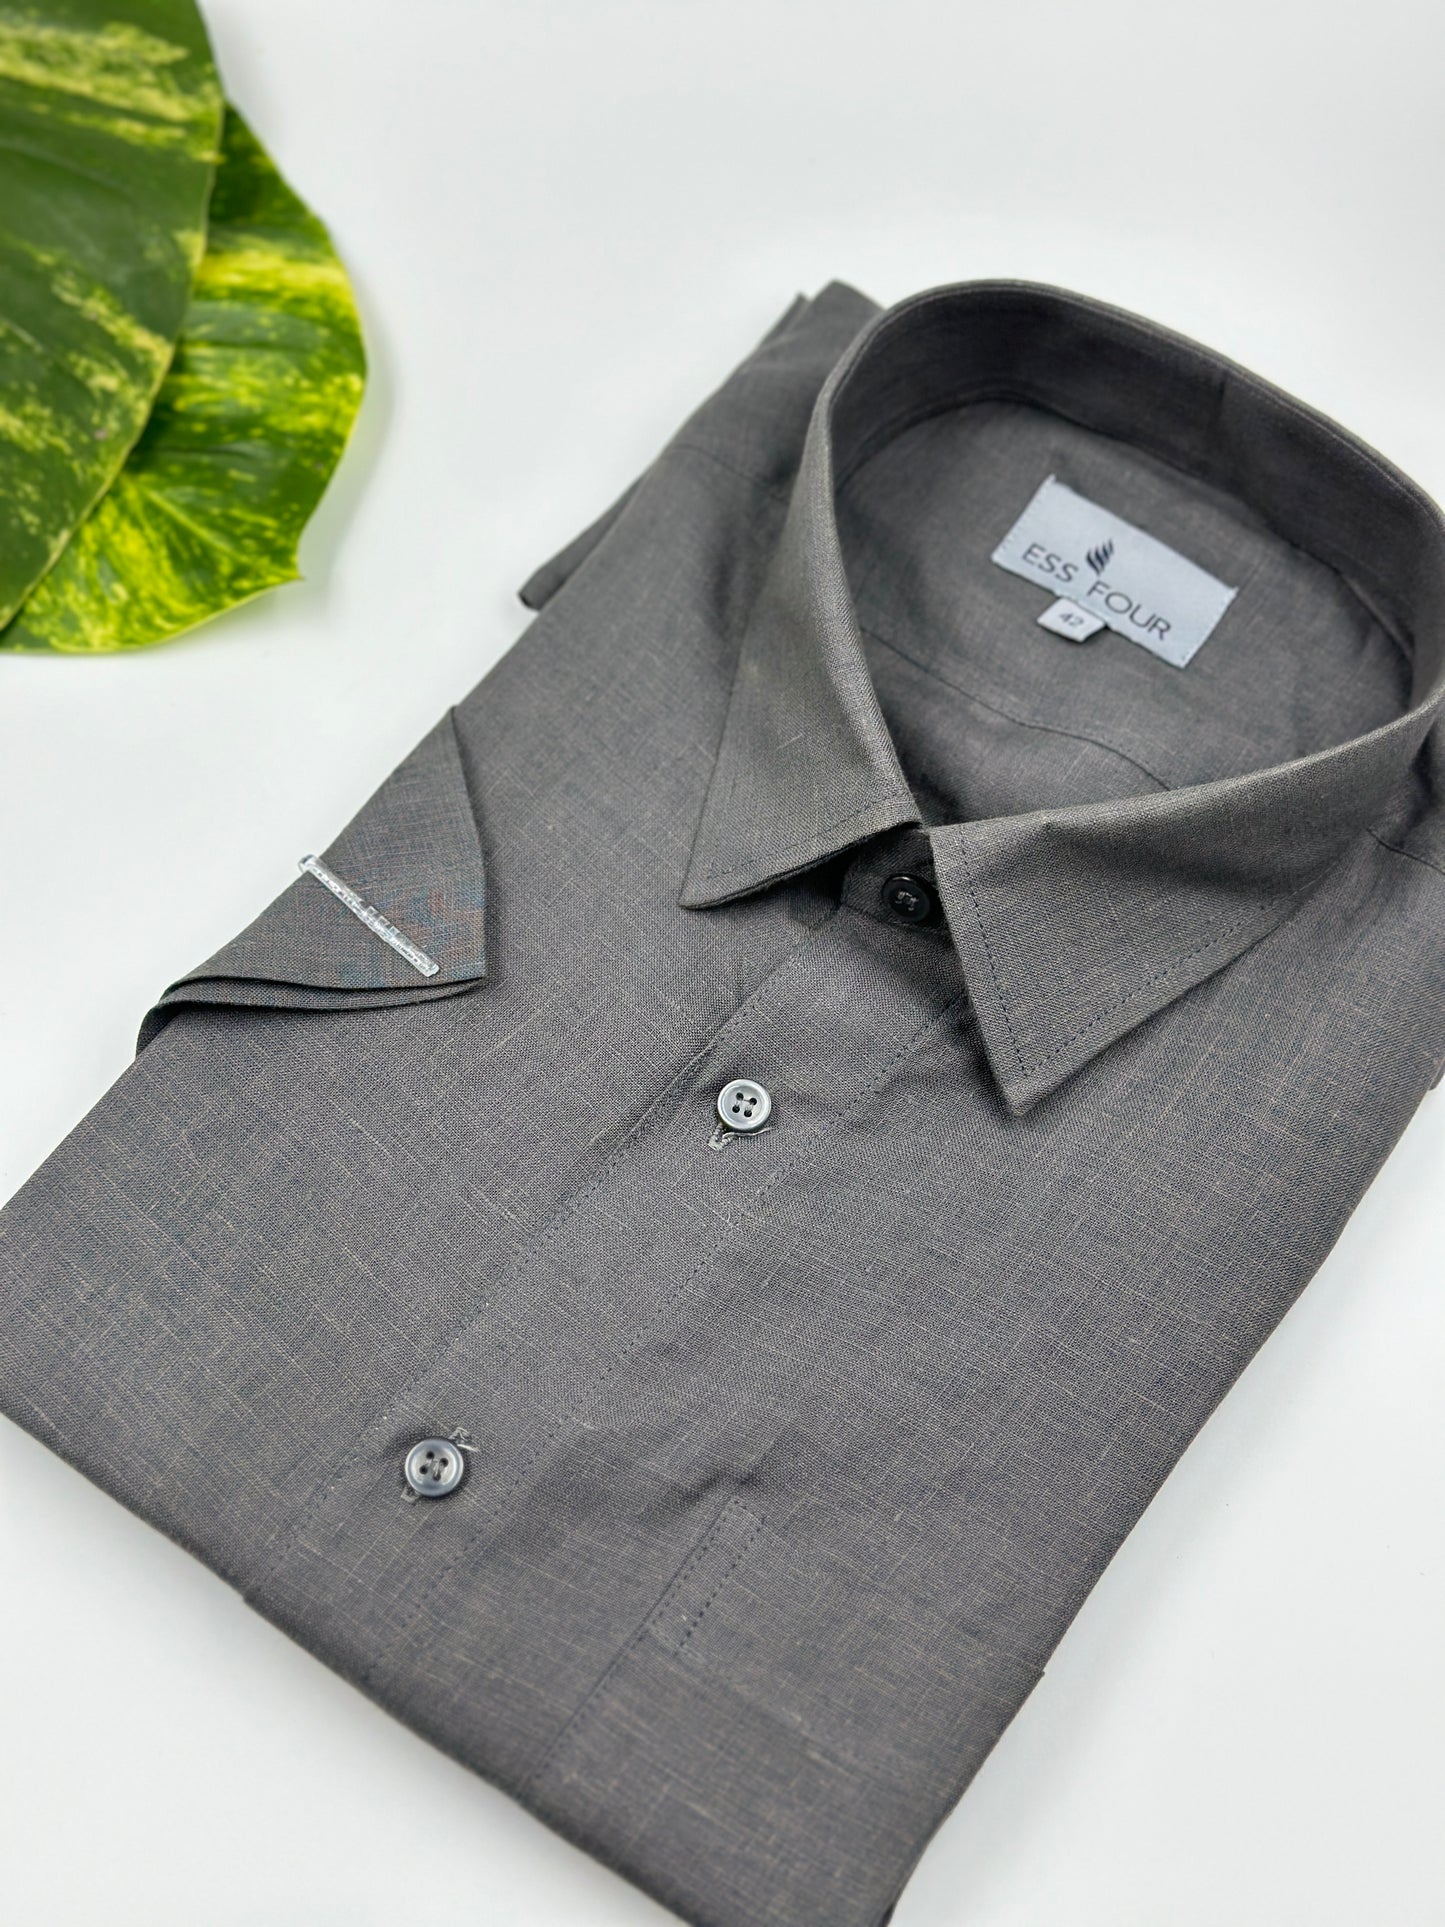 Dark Grey Linen Shirt - Men's Linen Shirt